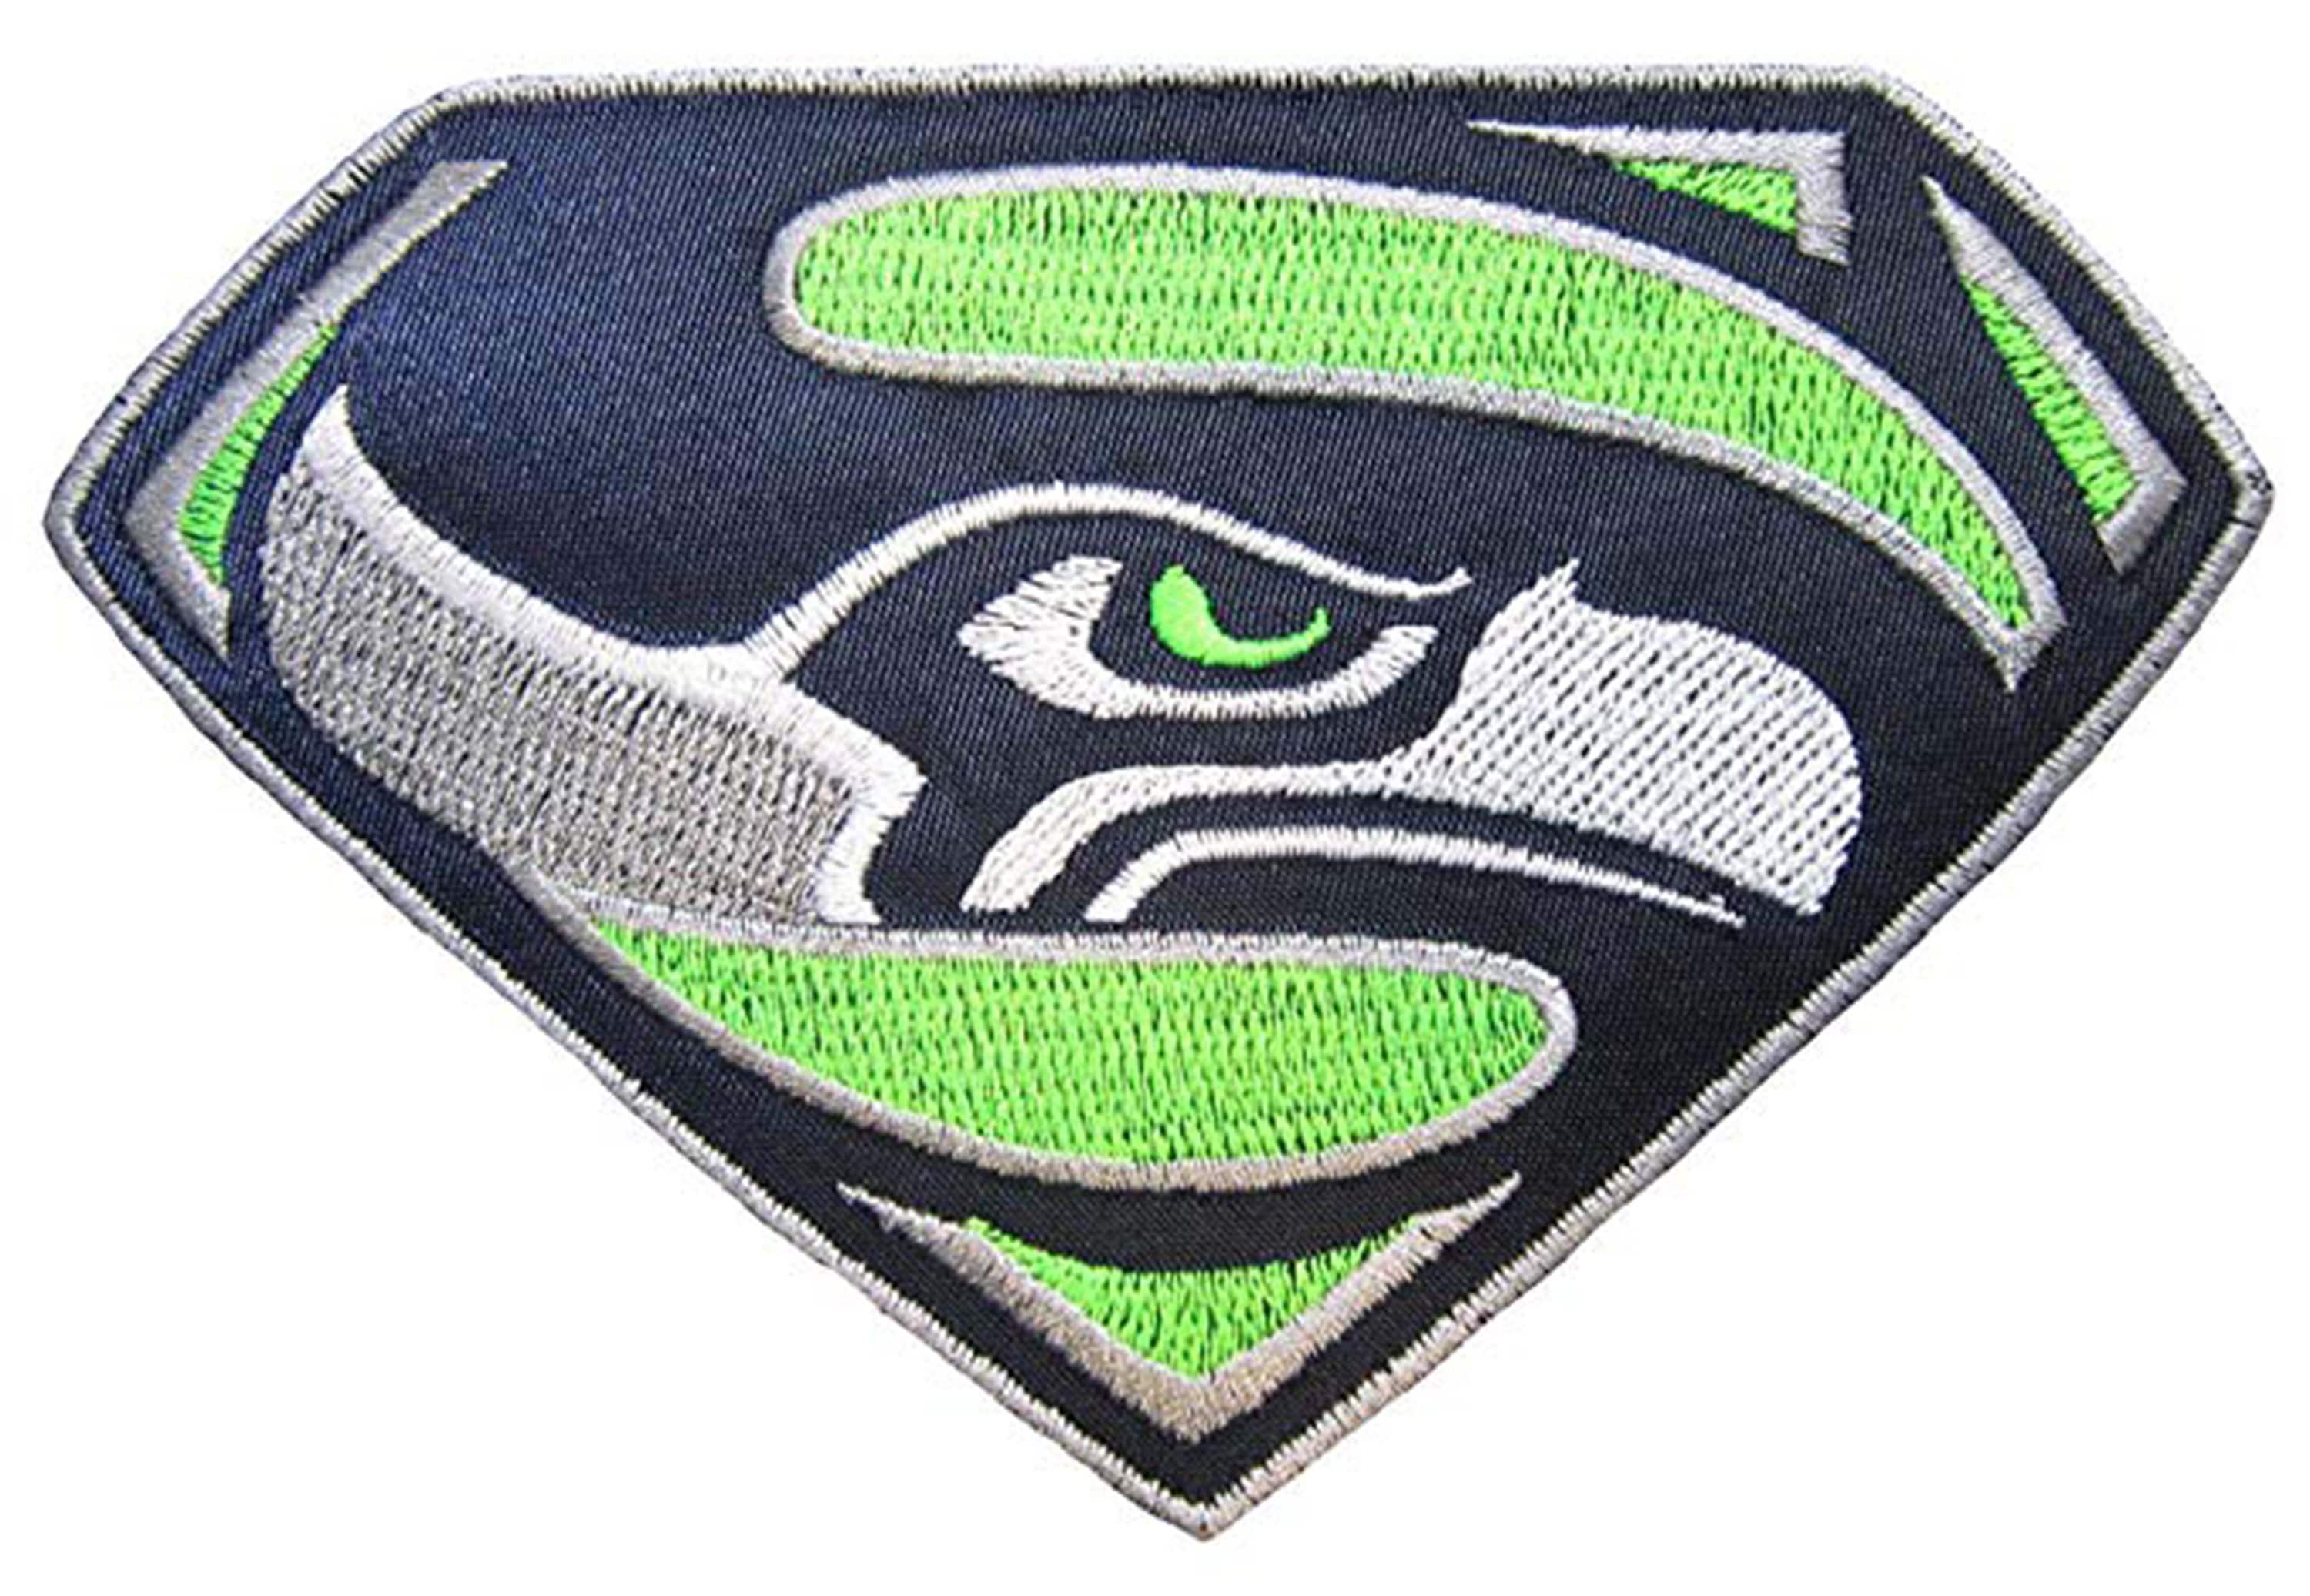 Патч Supersonic. Superhawk logo. Купить патч таков путь. Seattle logo. Collection patch